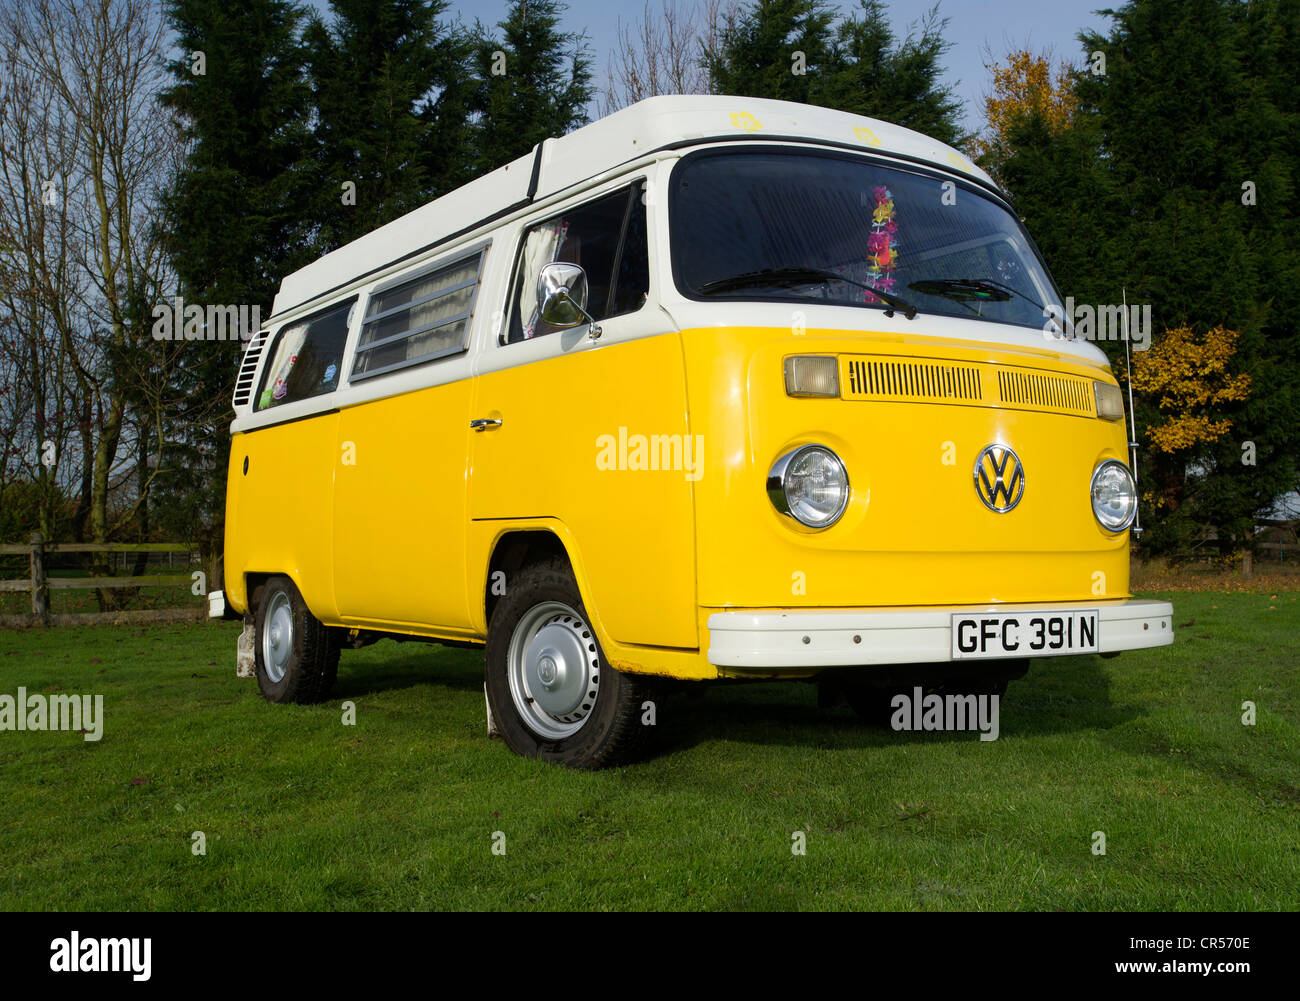 Bay WIndow VW Volkswagen camper van, micro bus Stock Photo